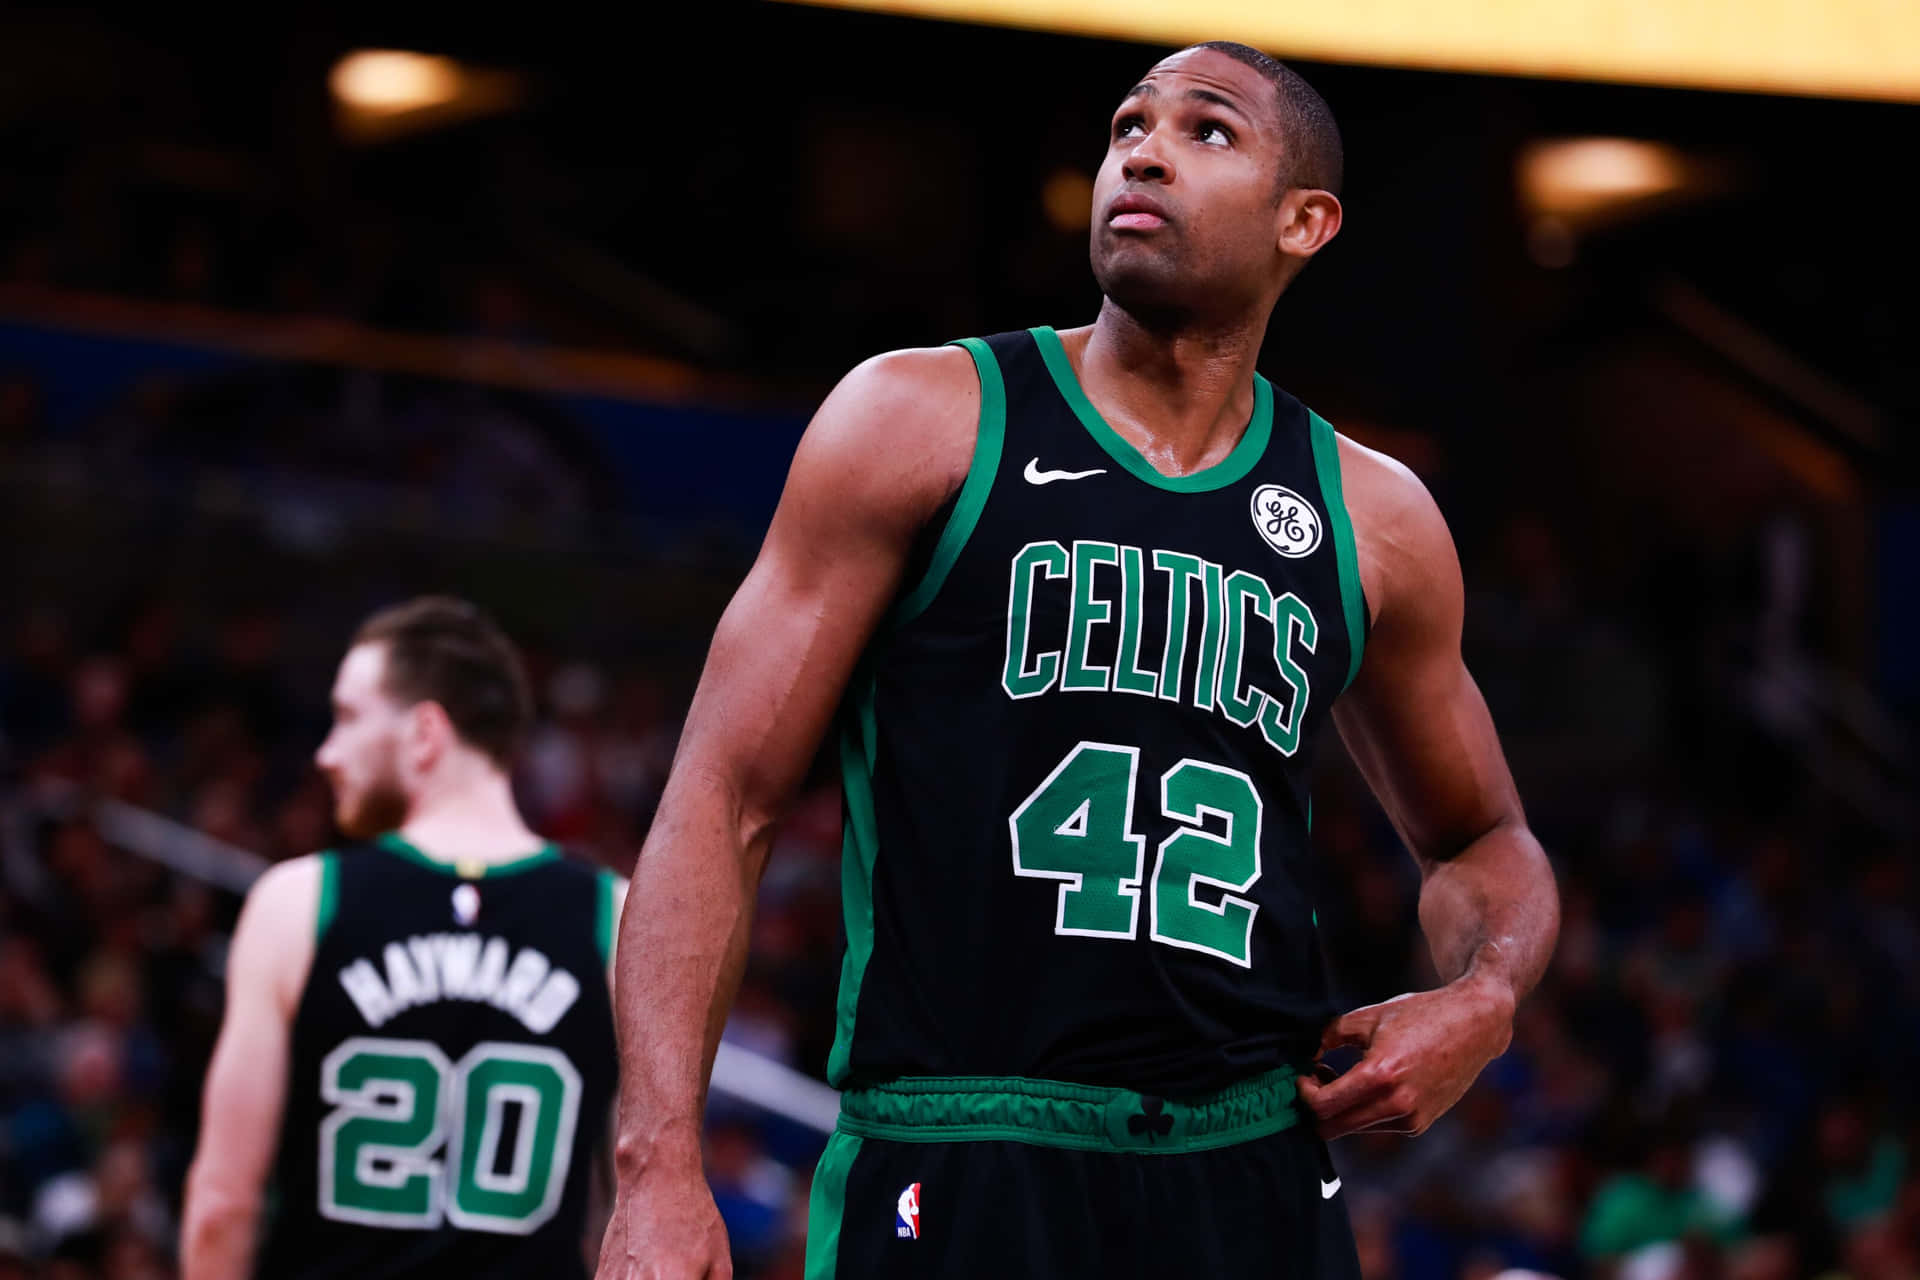 Celtics All-star Al Horford